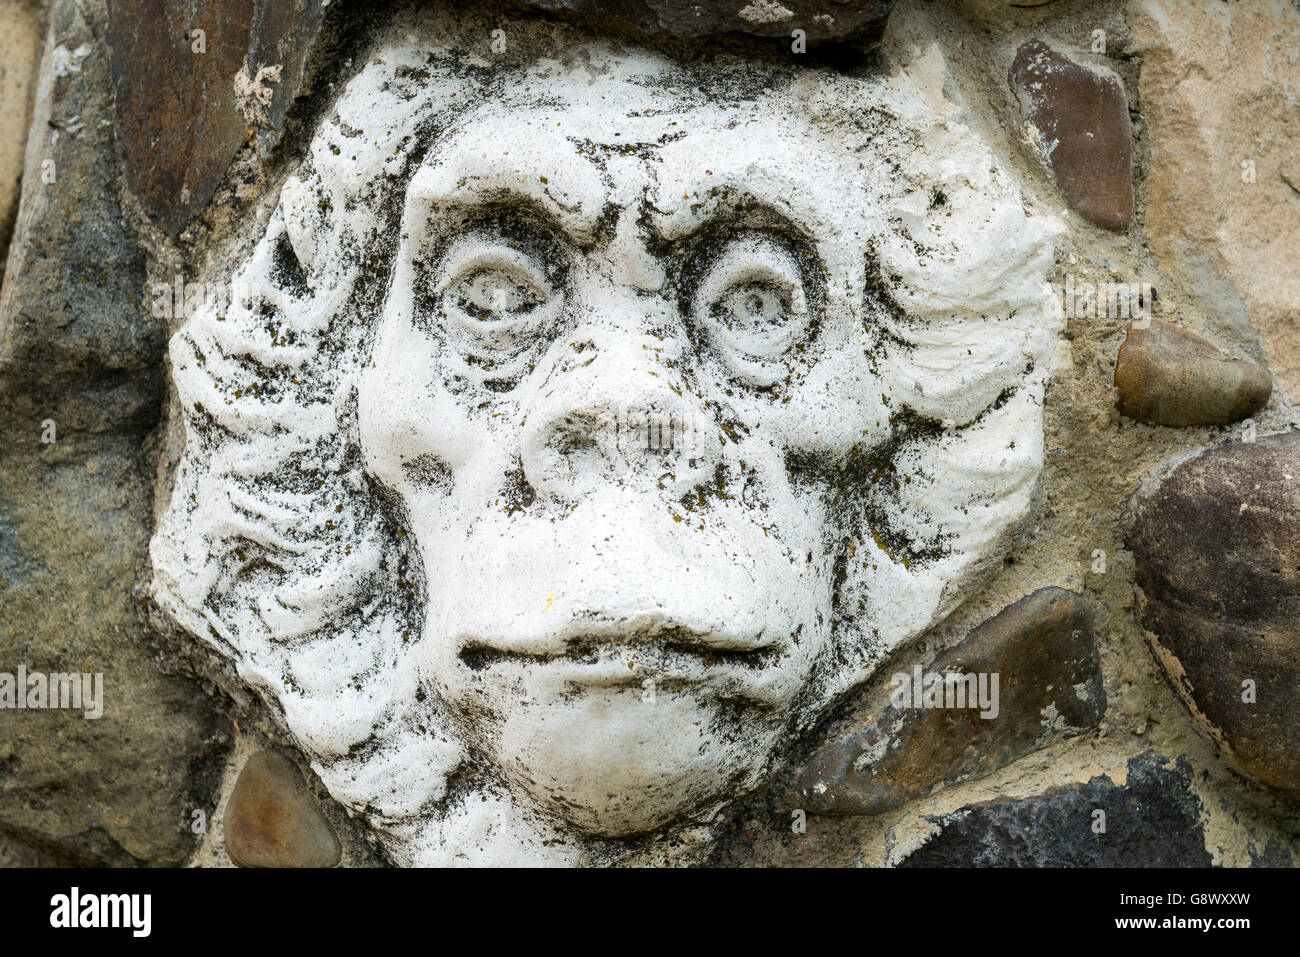 Monkey face sculpture by Mykola Holowan in his house in Lutsk, Ukraine Stock Photo